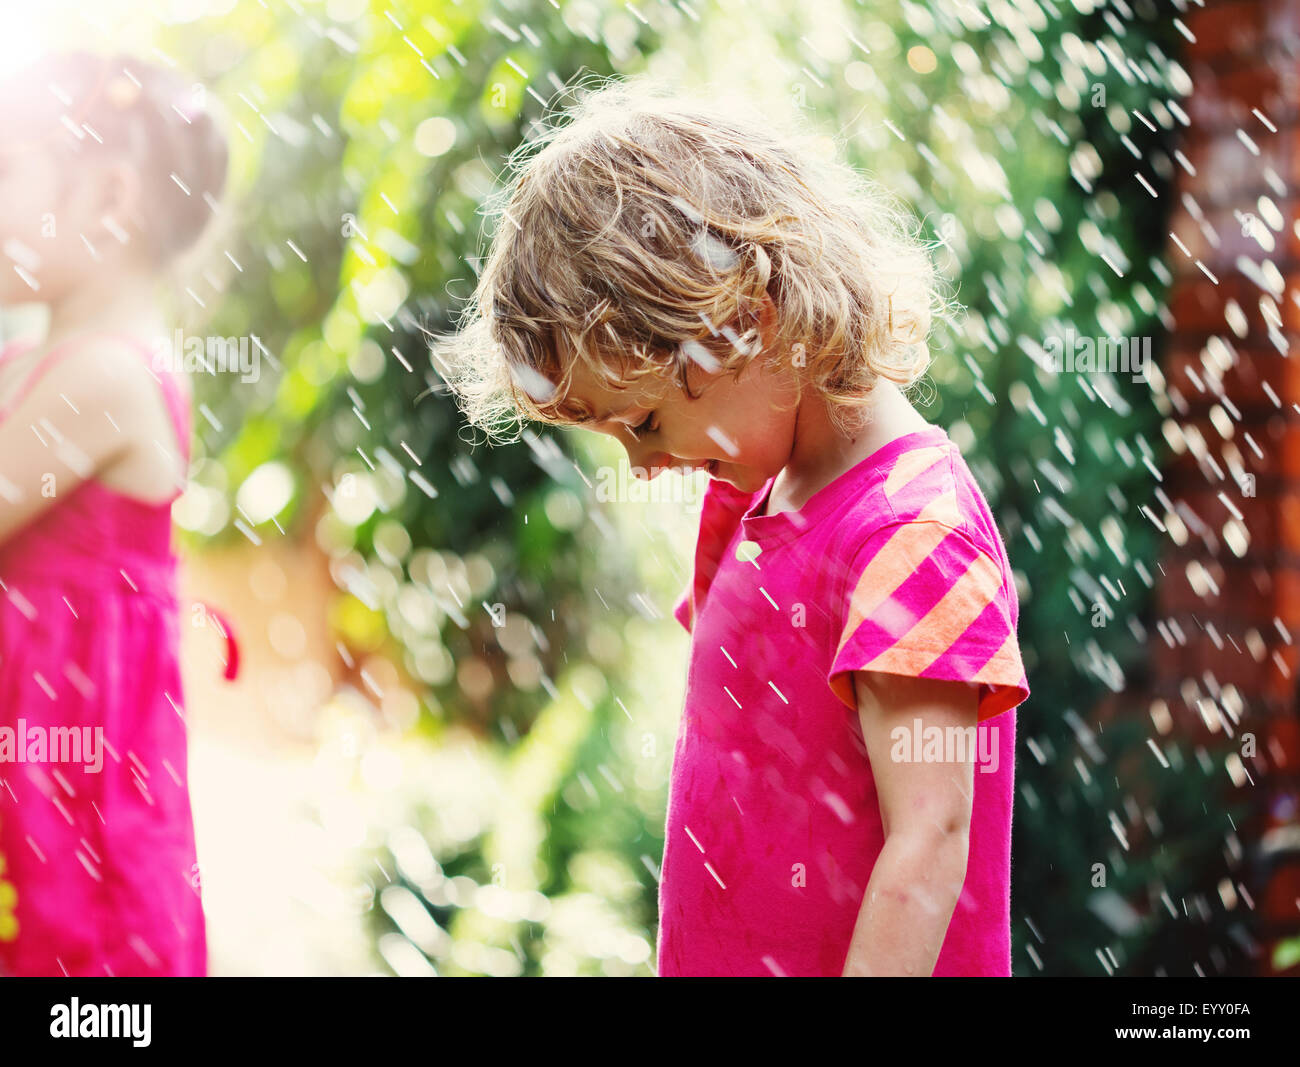 Glücklich niedliche kleine Mädchen im Regen stehen. Porträt hautnah. Stockfoto